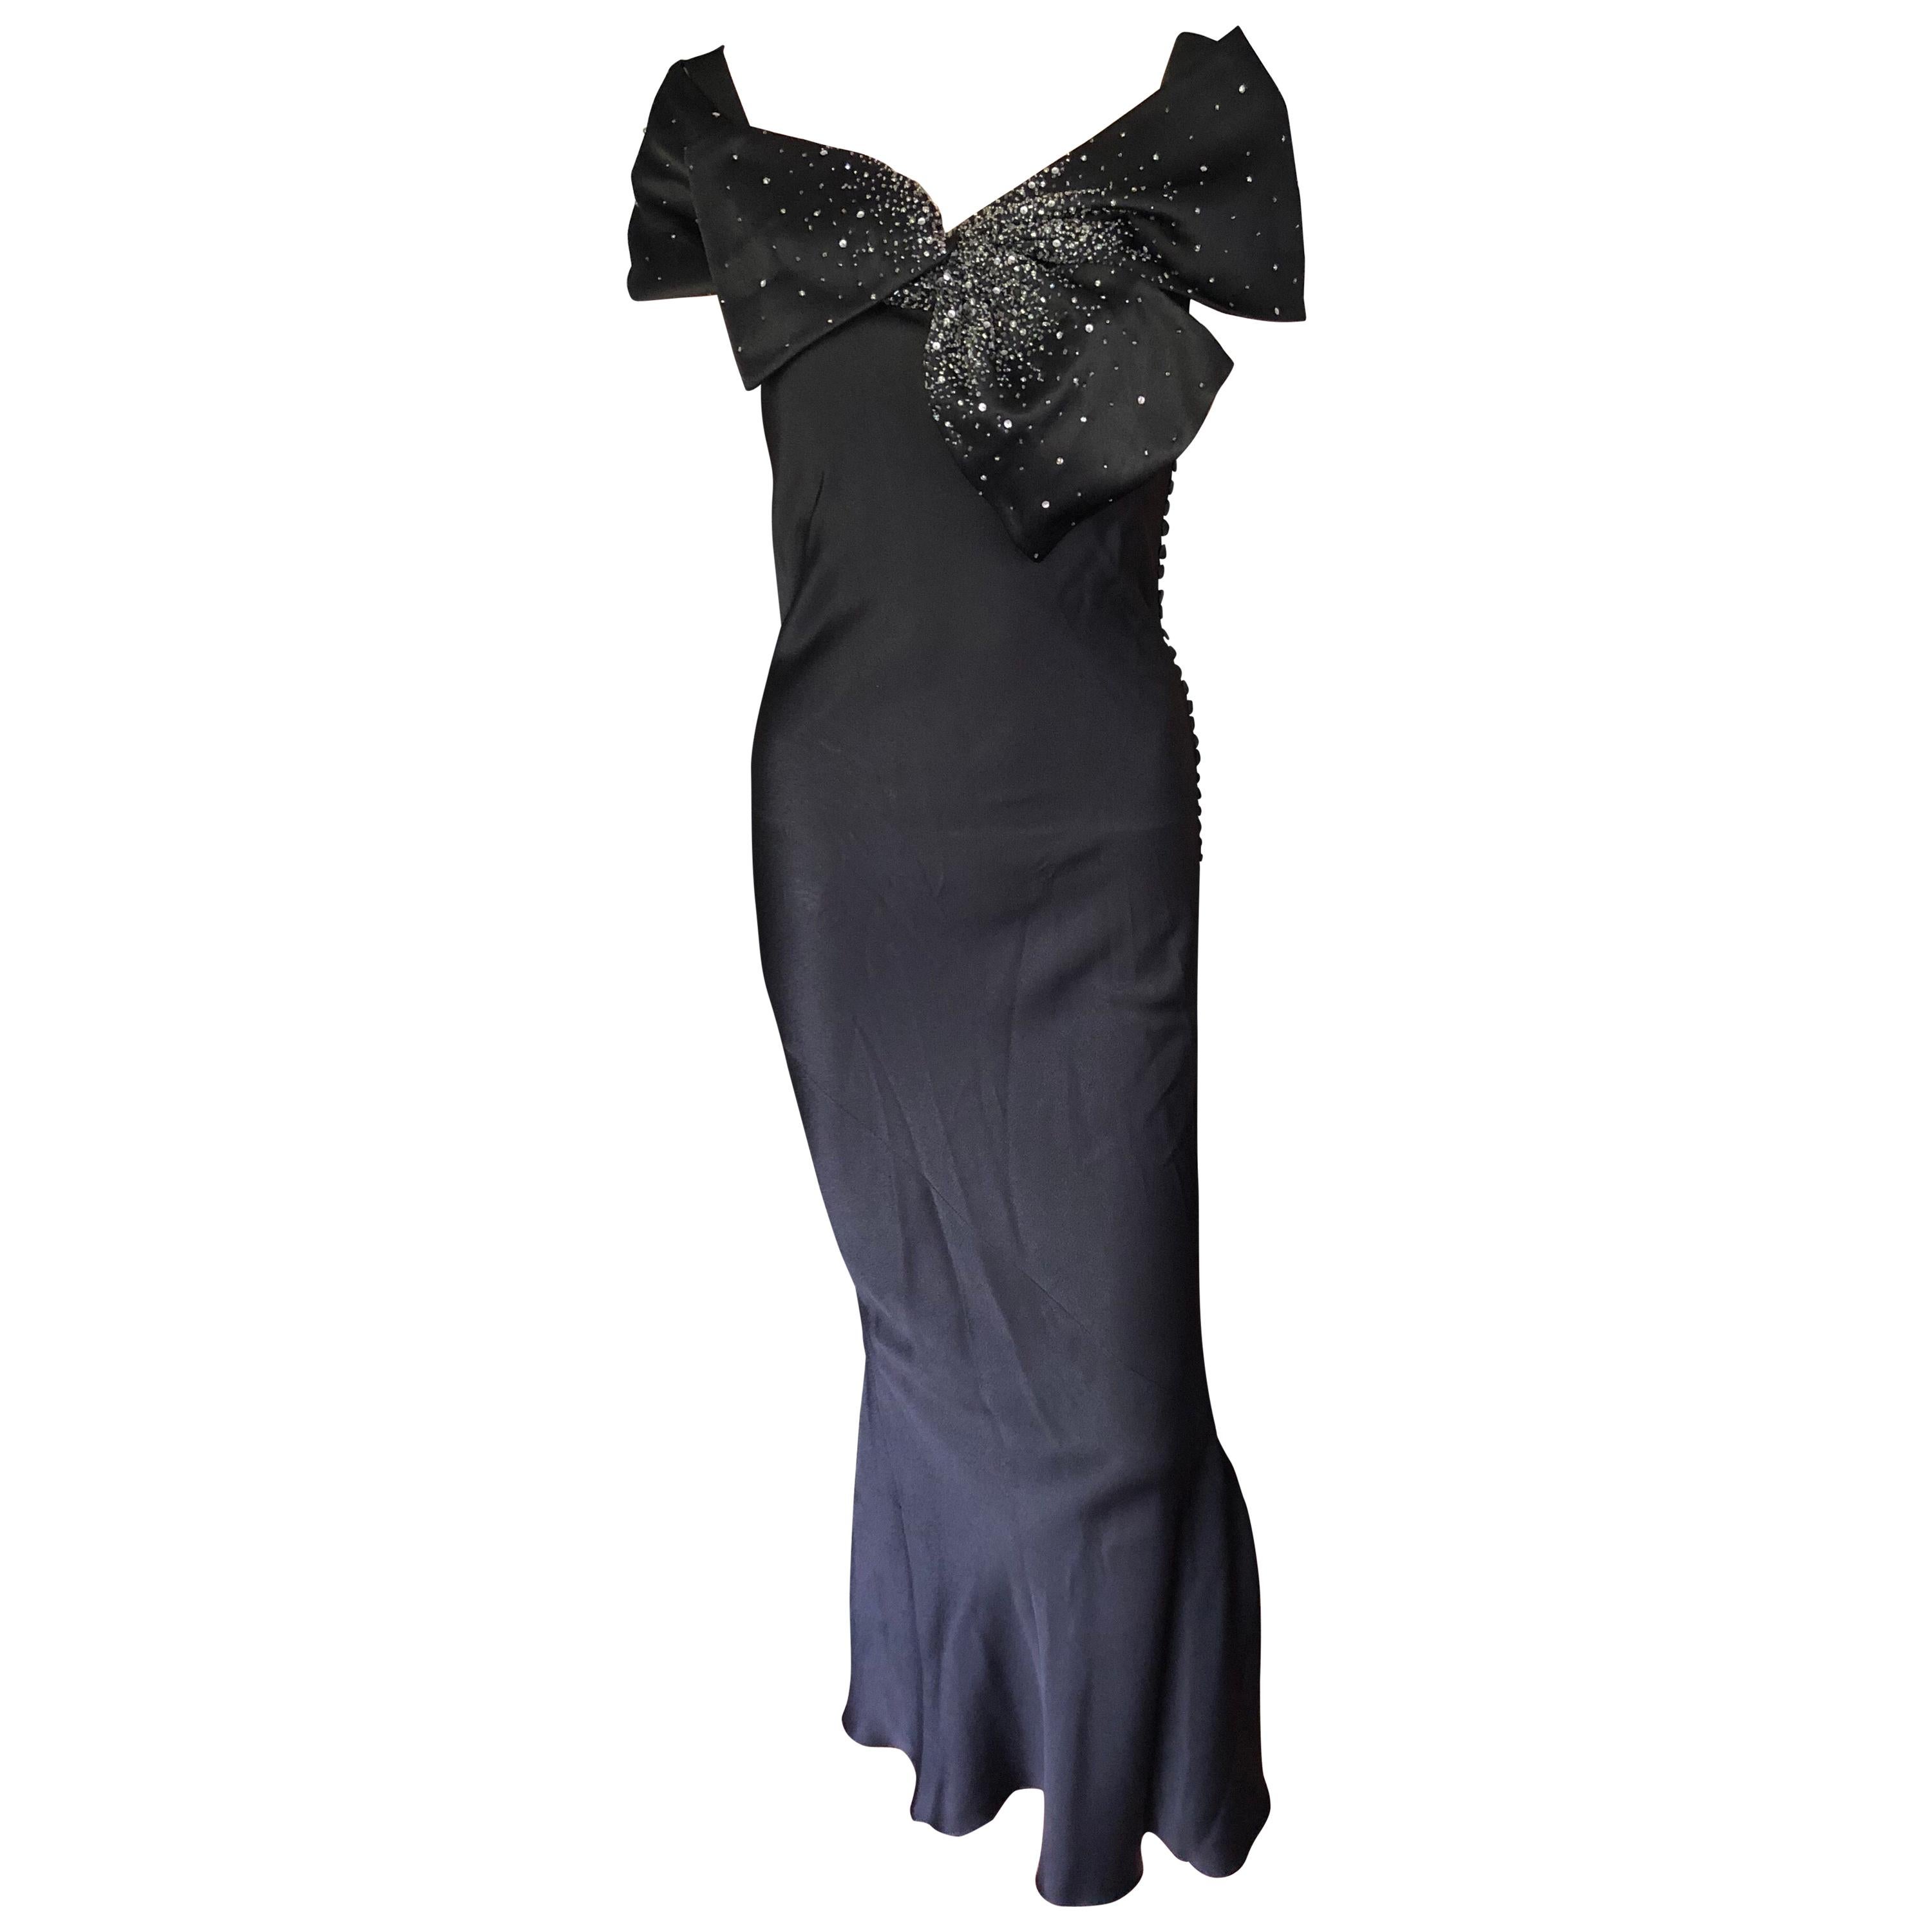 Christian Dior Satin Embellished Black Dress Gown